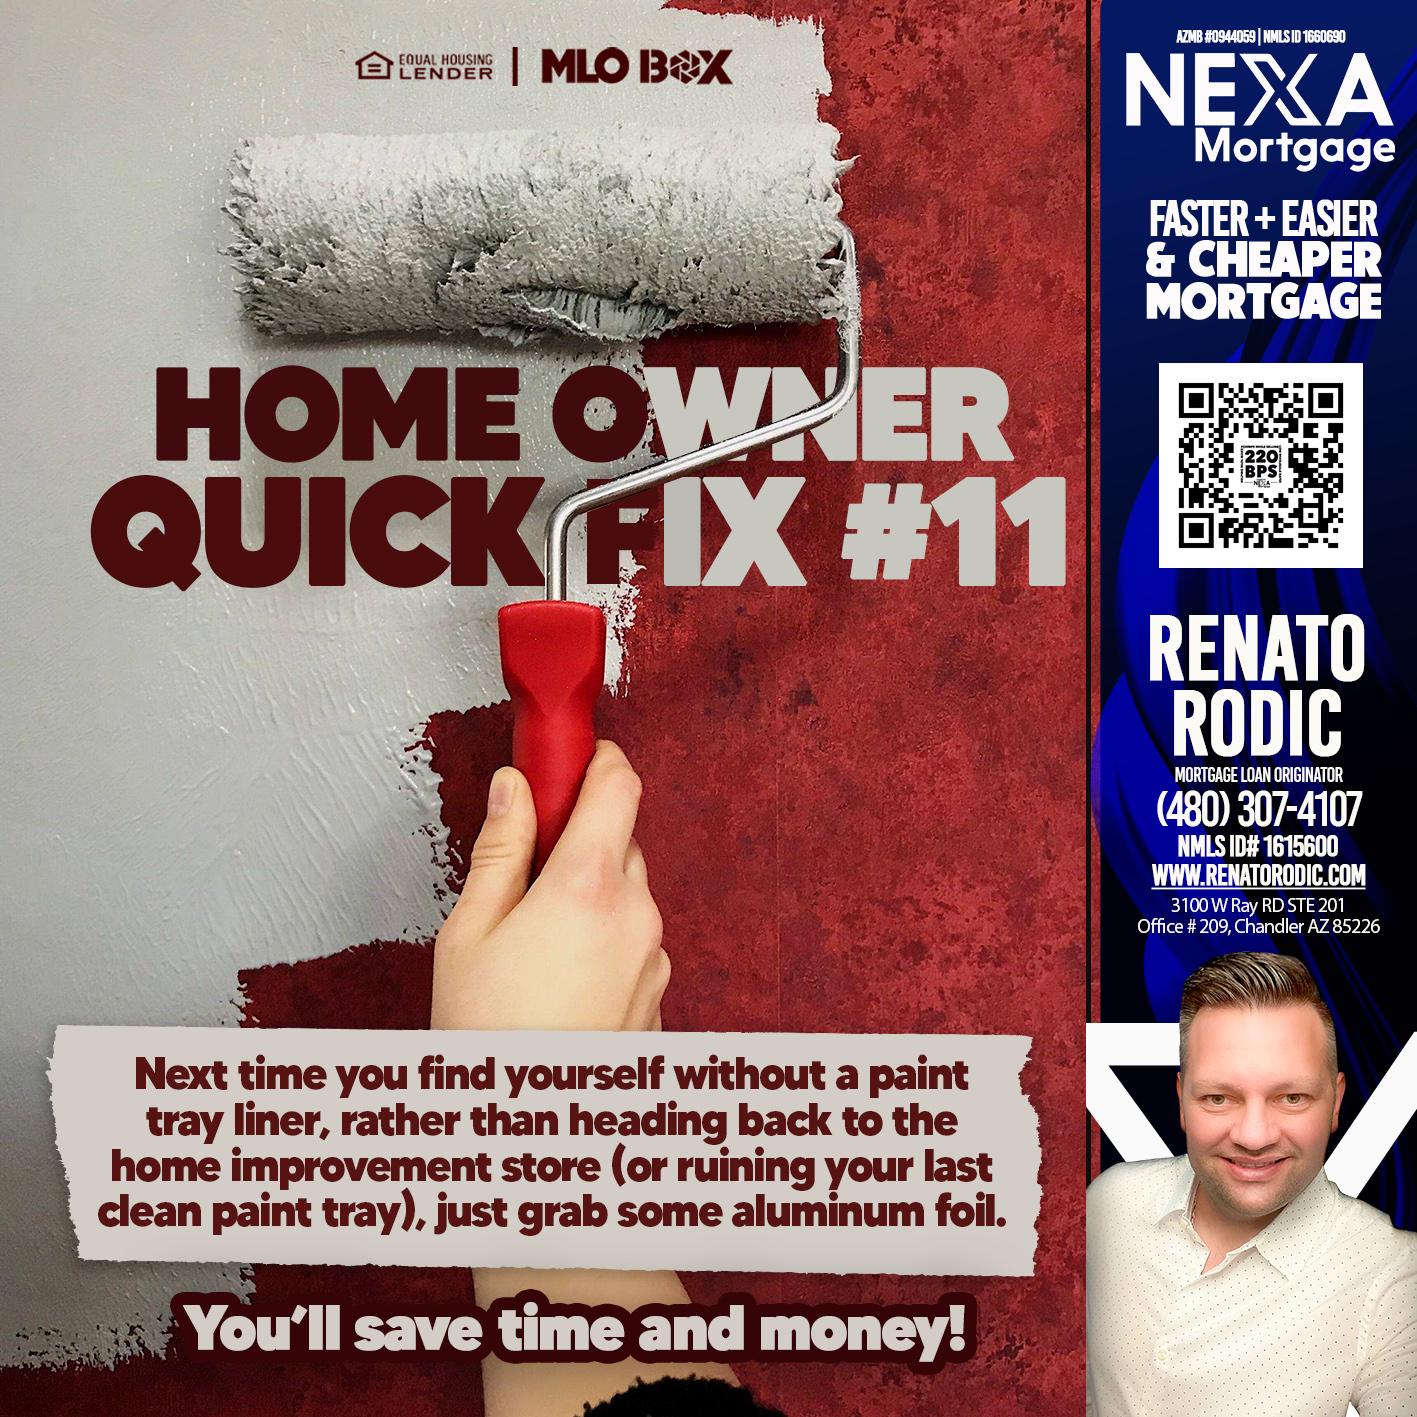 HOME OWNER QUICK FIX - Renato Rodic -Mortgage Loan Originator